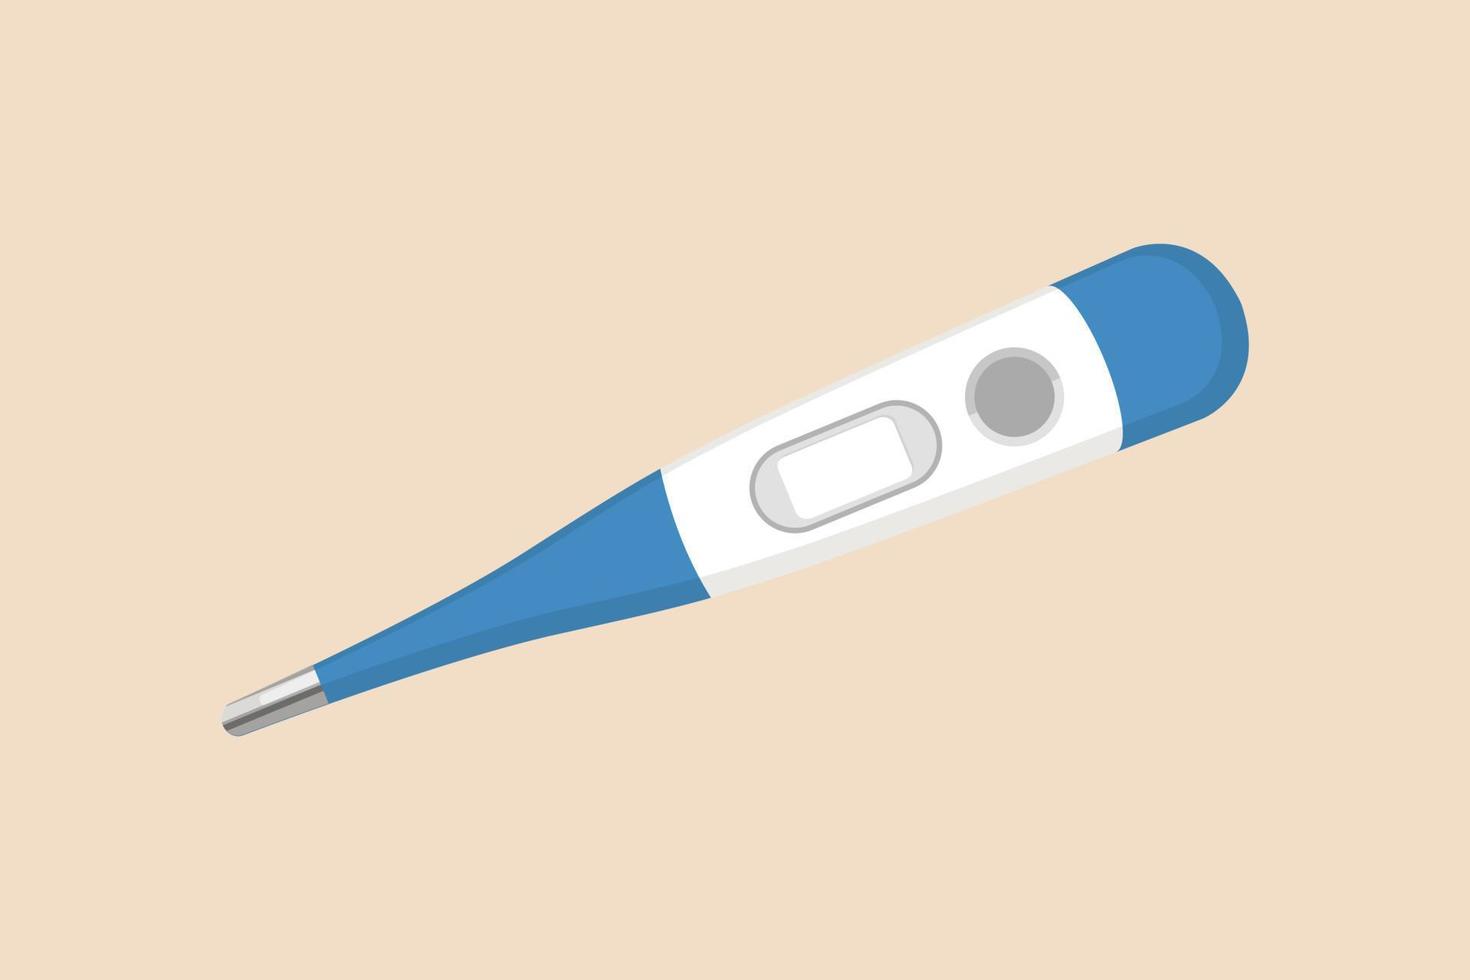 thermometer. medisch apparaat voor controle lichaam temperatuur. medisch uitrusting concept. gekleurde vlak grafisch vector illustratie geïsoleerd.